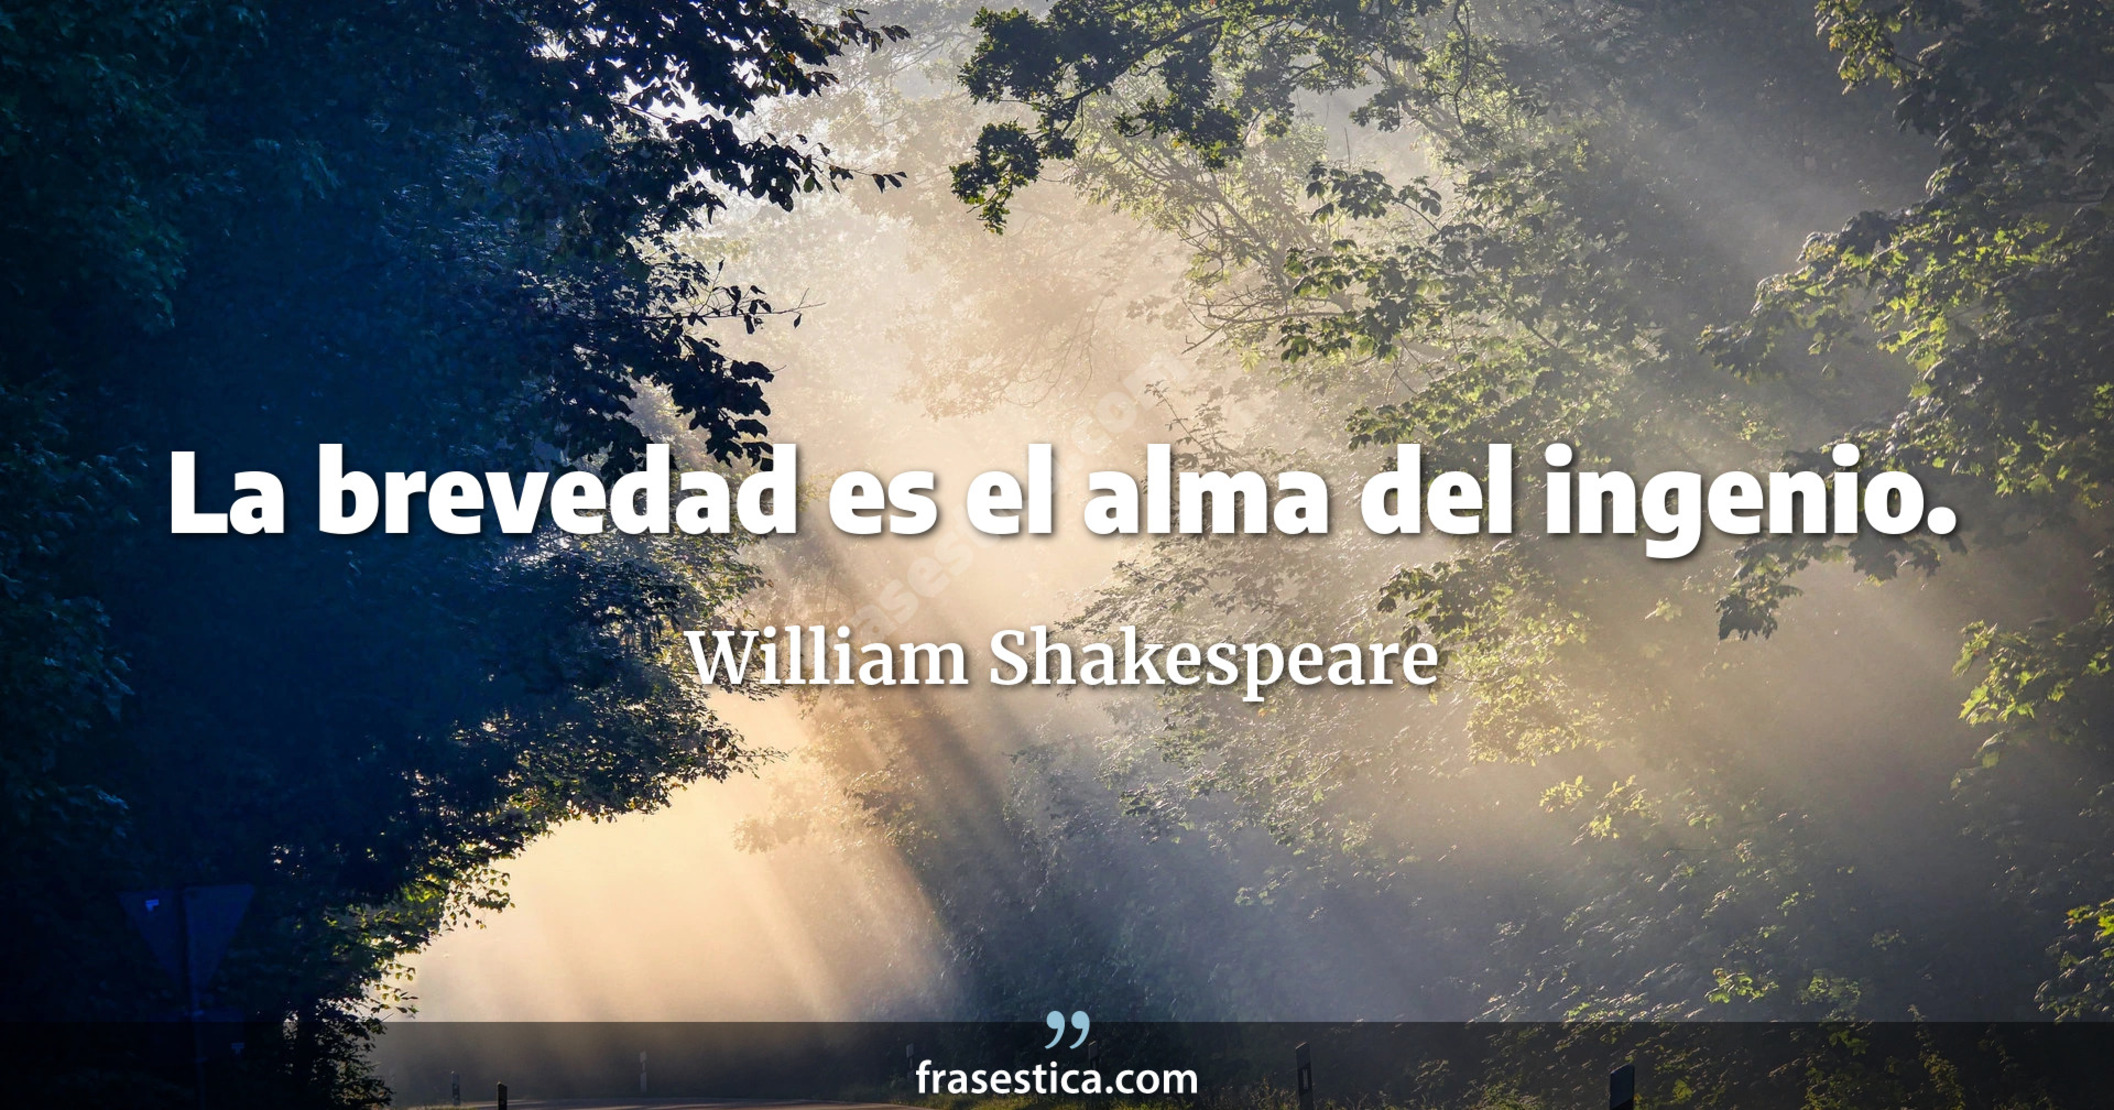 La brevedad es el alma del ingenio. - William Shakespeare